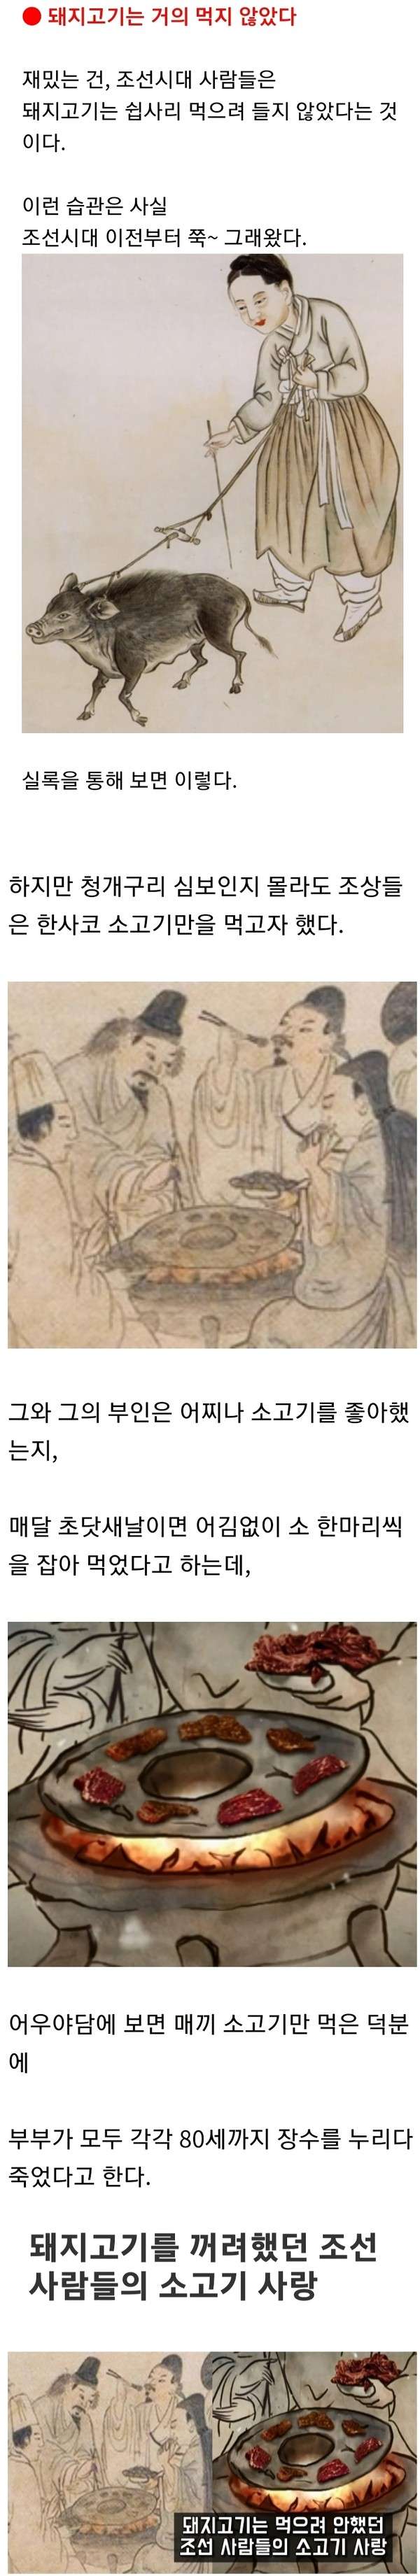 조선시대 때 돼지고기는 거의 먹지 않았다